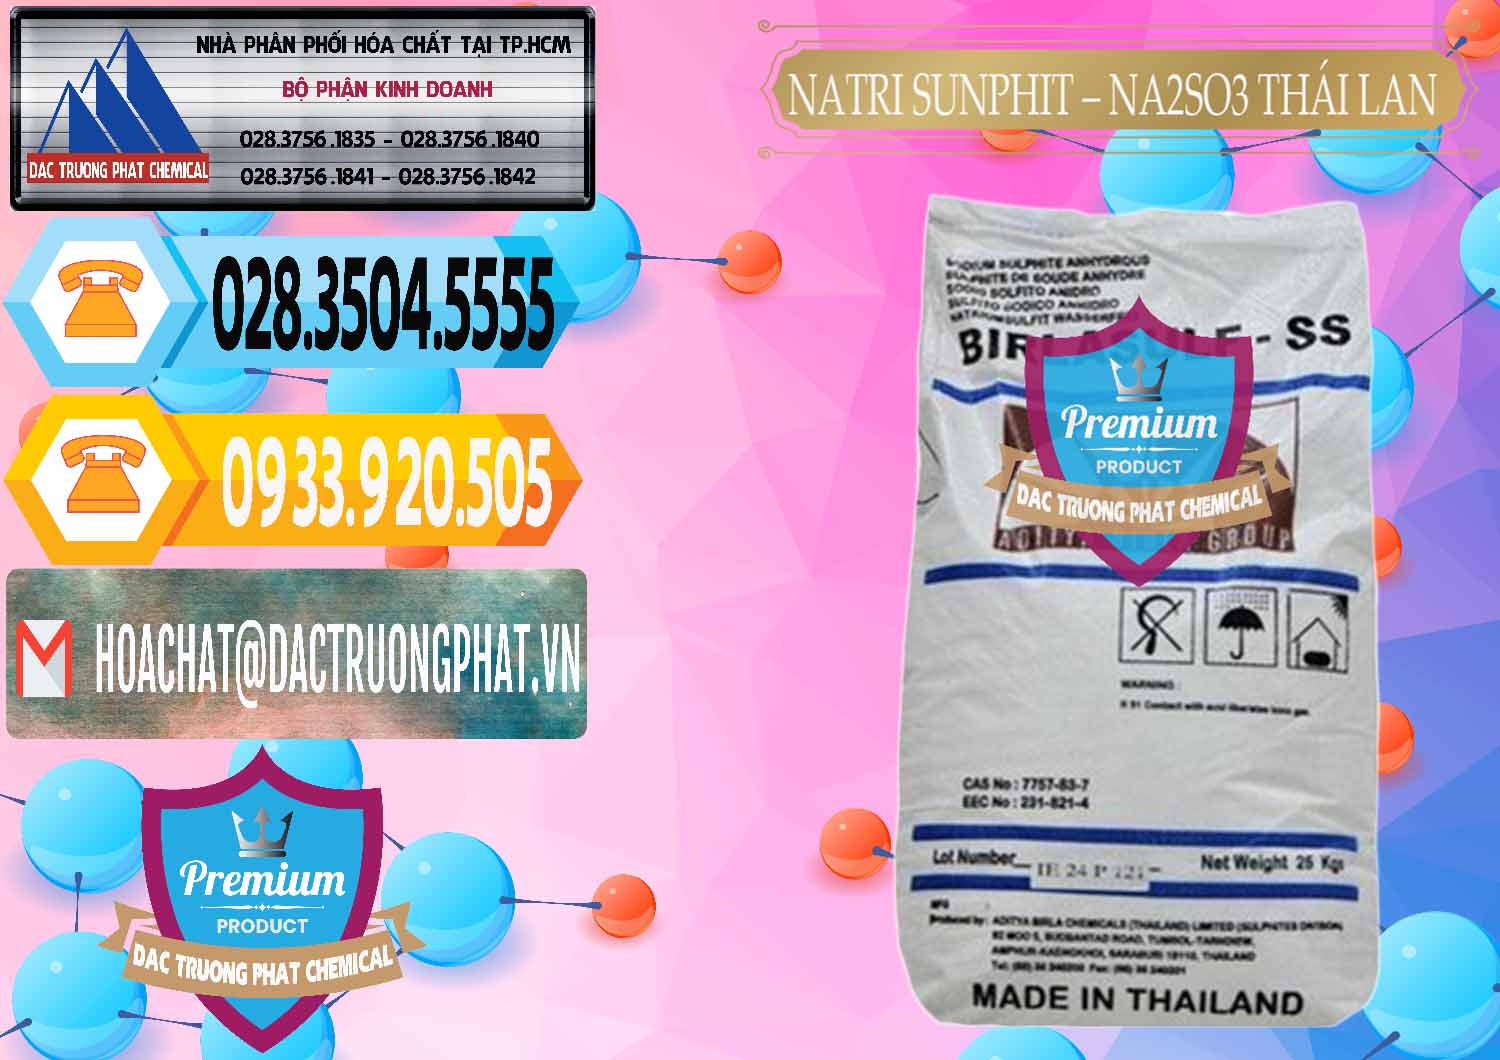 Cung cấp và bán Natri Sunphit - NA2SO3 Thái Lan - 0105 - Nơi chuyên phân phối & kinh doanh hóa chất tại TP.HCM - hoachattayrua.net